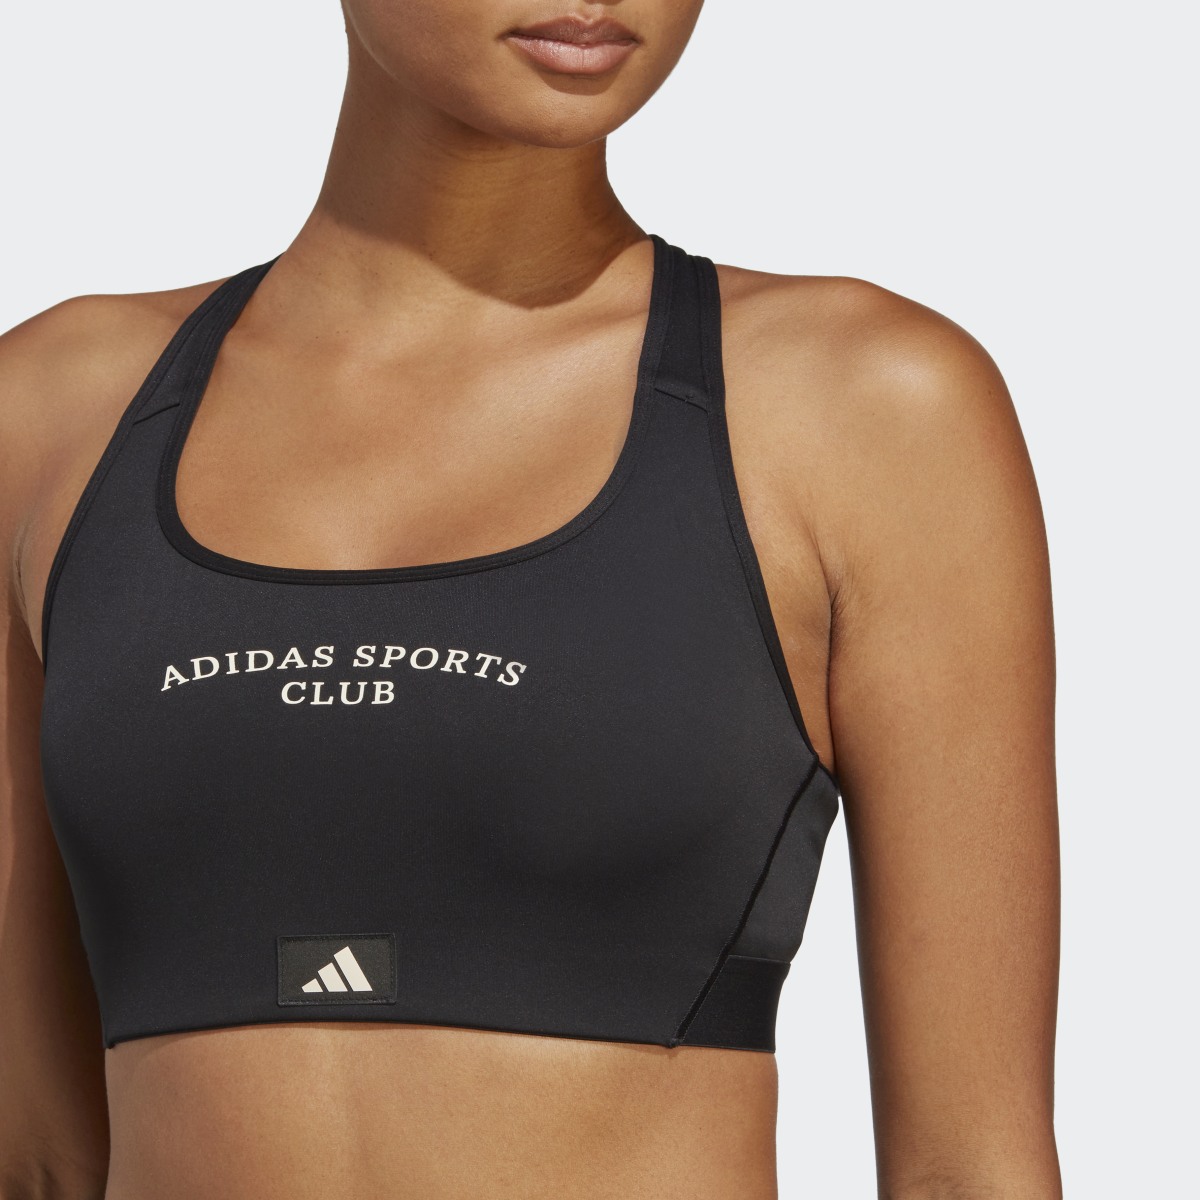 Adidas Sports Club Medium-Support Bra. 7